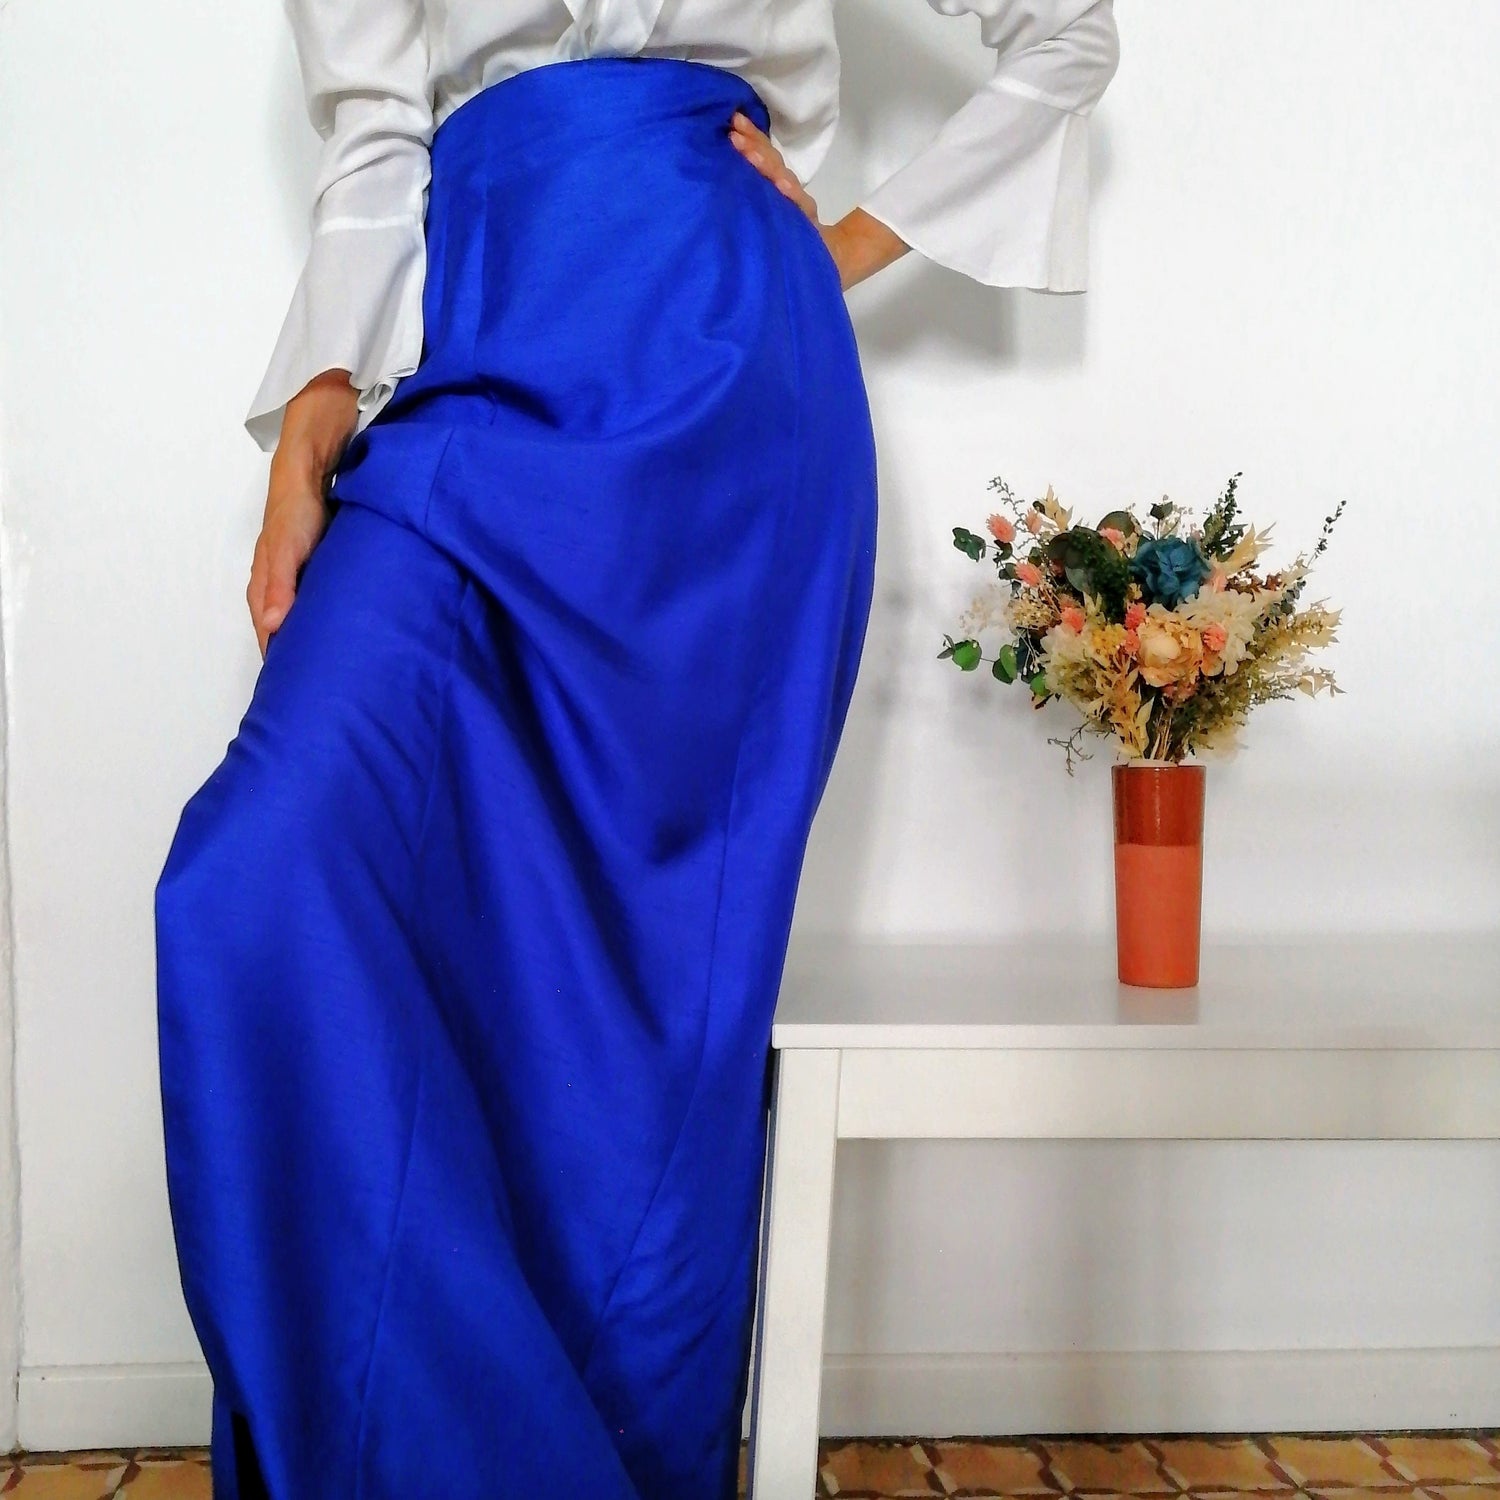 Línea de visión Tomar represalias Mujer hermosa Falda larga de la firma Ungaro 1960 vintage azul eléctrico de fiesta. –  Bogaavante